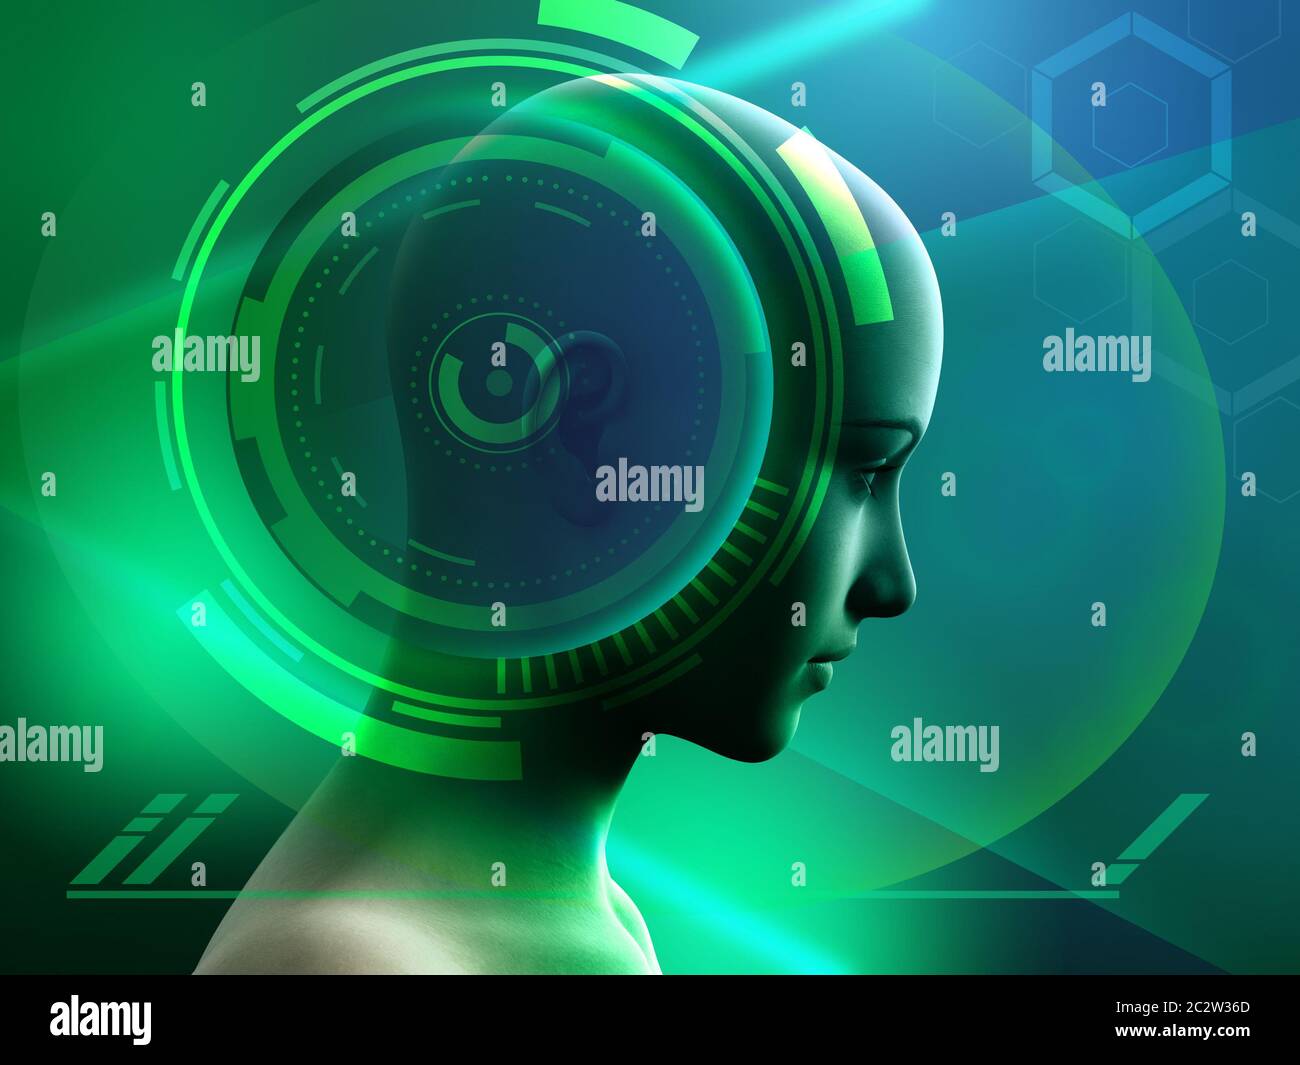 Menschlicher Kopf mit einigen High-Tech-Interface-Elementen. Digitale Illustration. Stockfoto